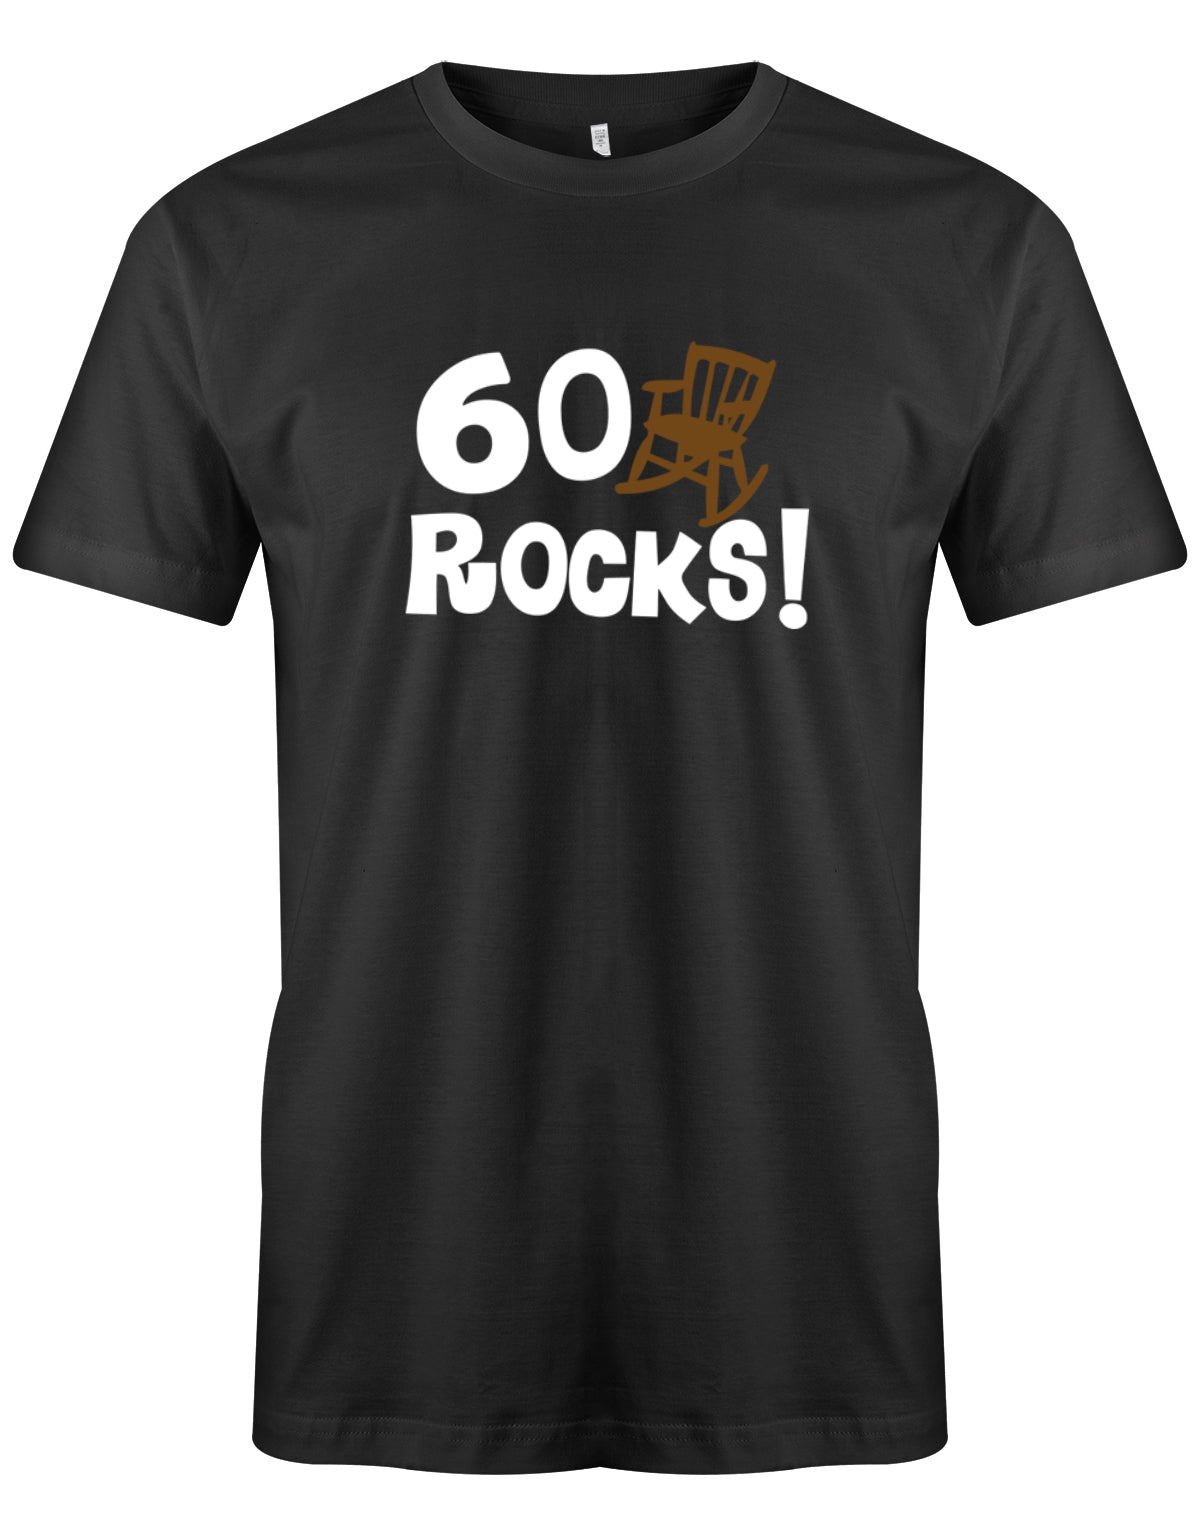 Lustiges T-Shirt zum 60. Geburtstag für den Mann Bedruckt mit 60 Rocks! Schaukelstuhl Schwarz